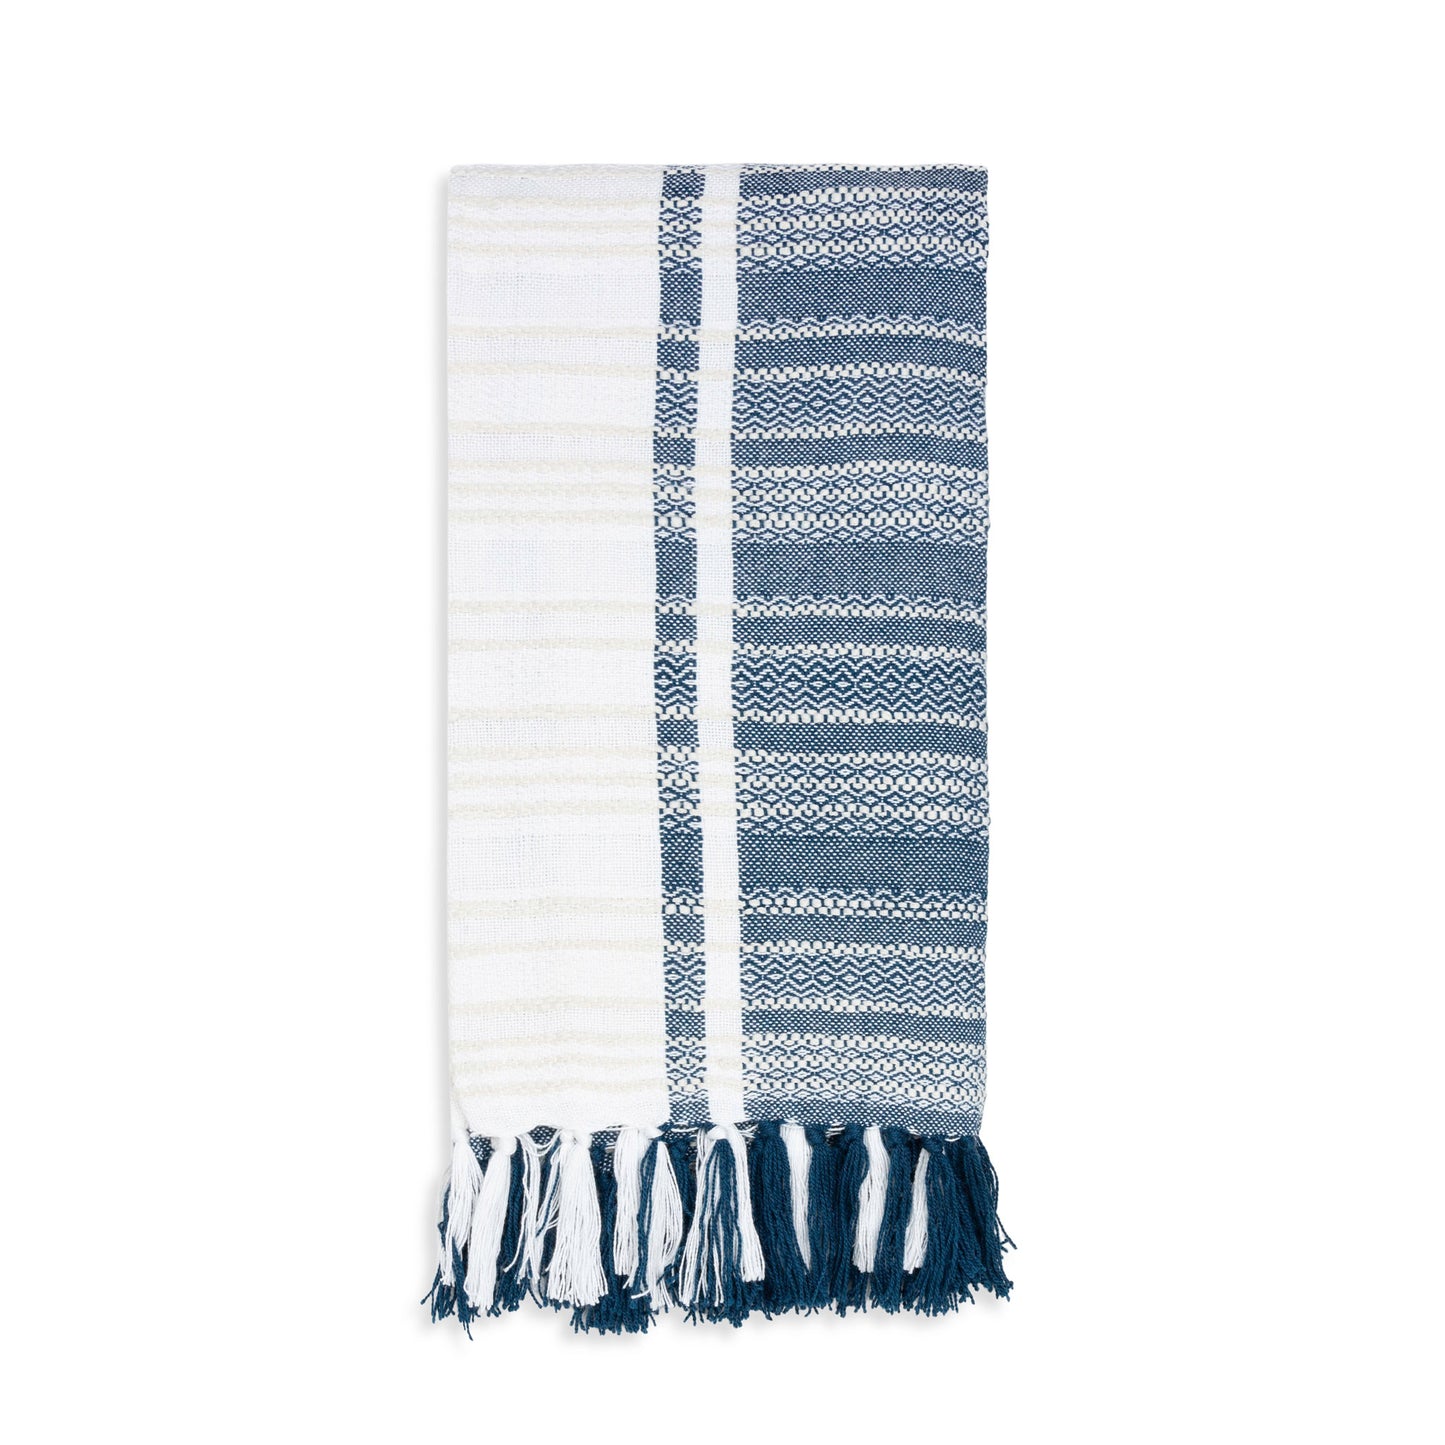 Genevieve 50x70" Indoor/Outdoor Recycled Woven Throw Blanket